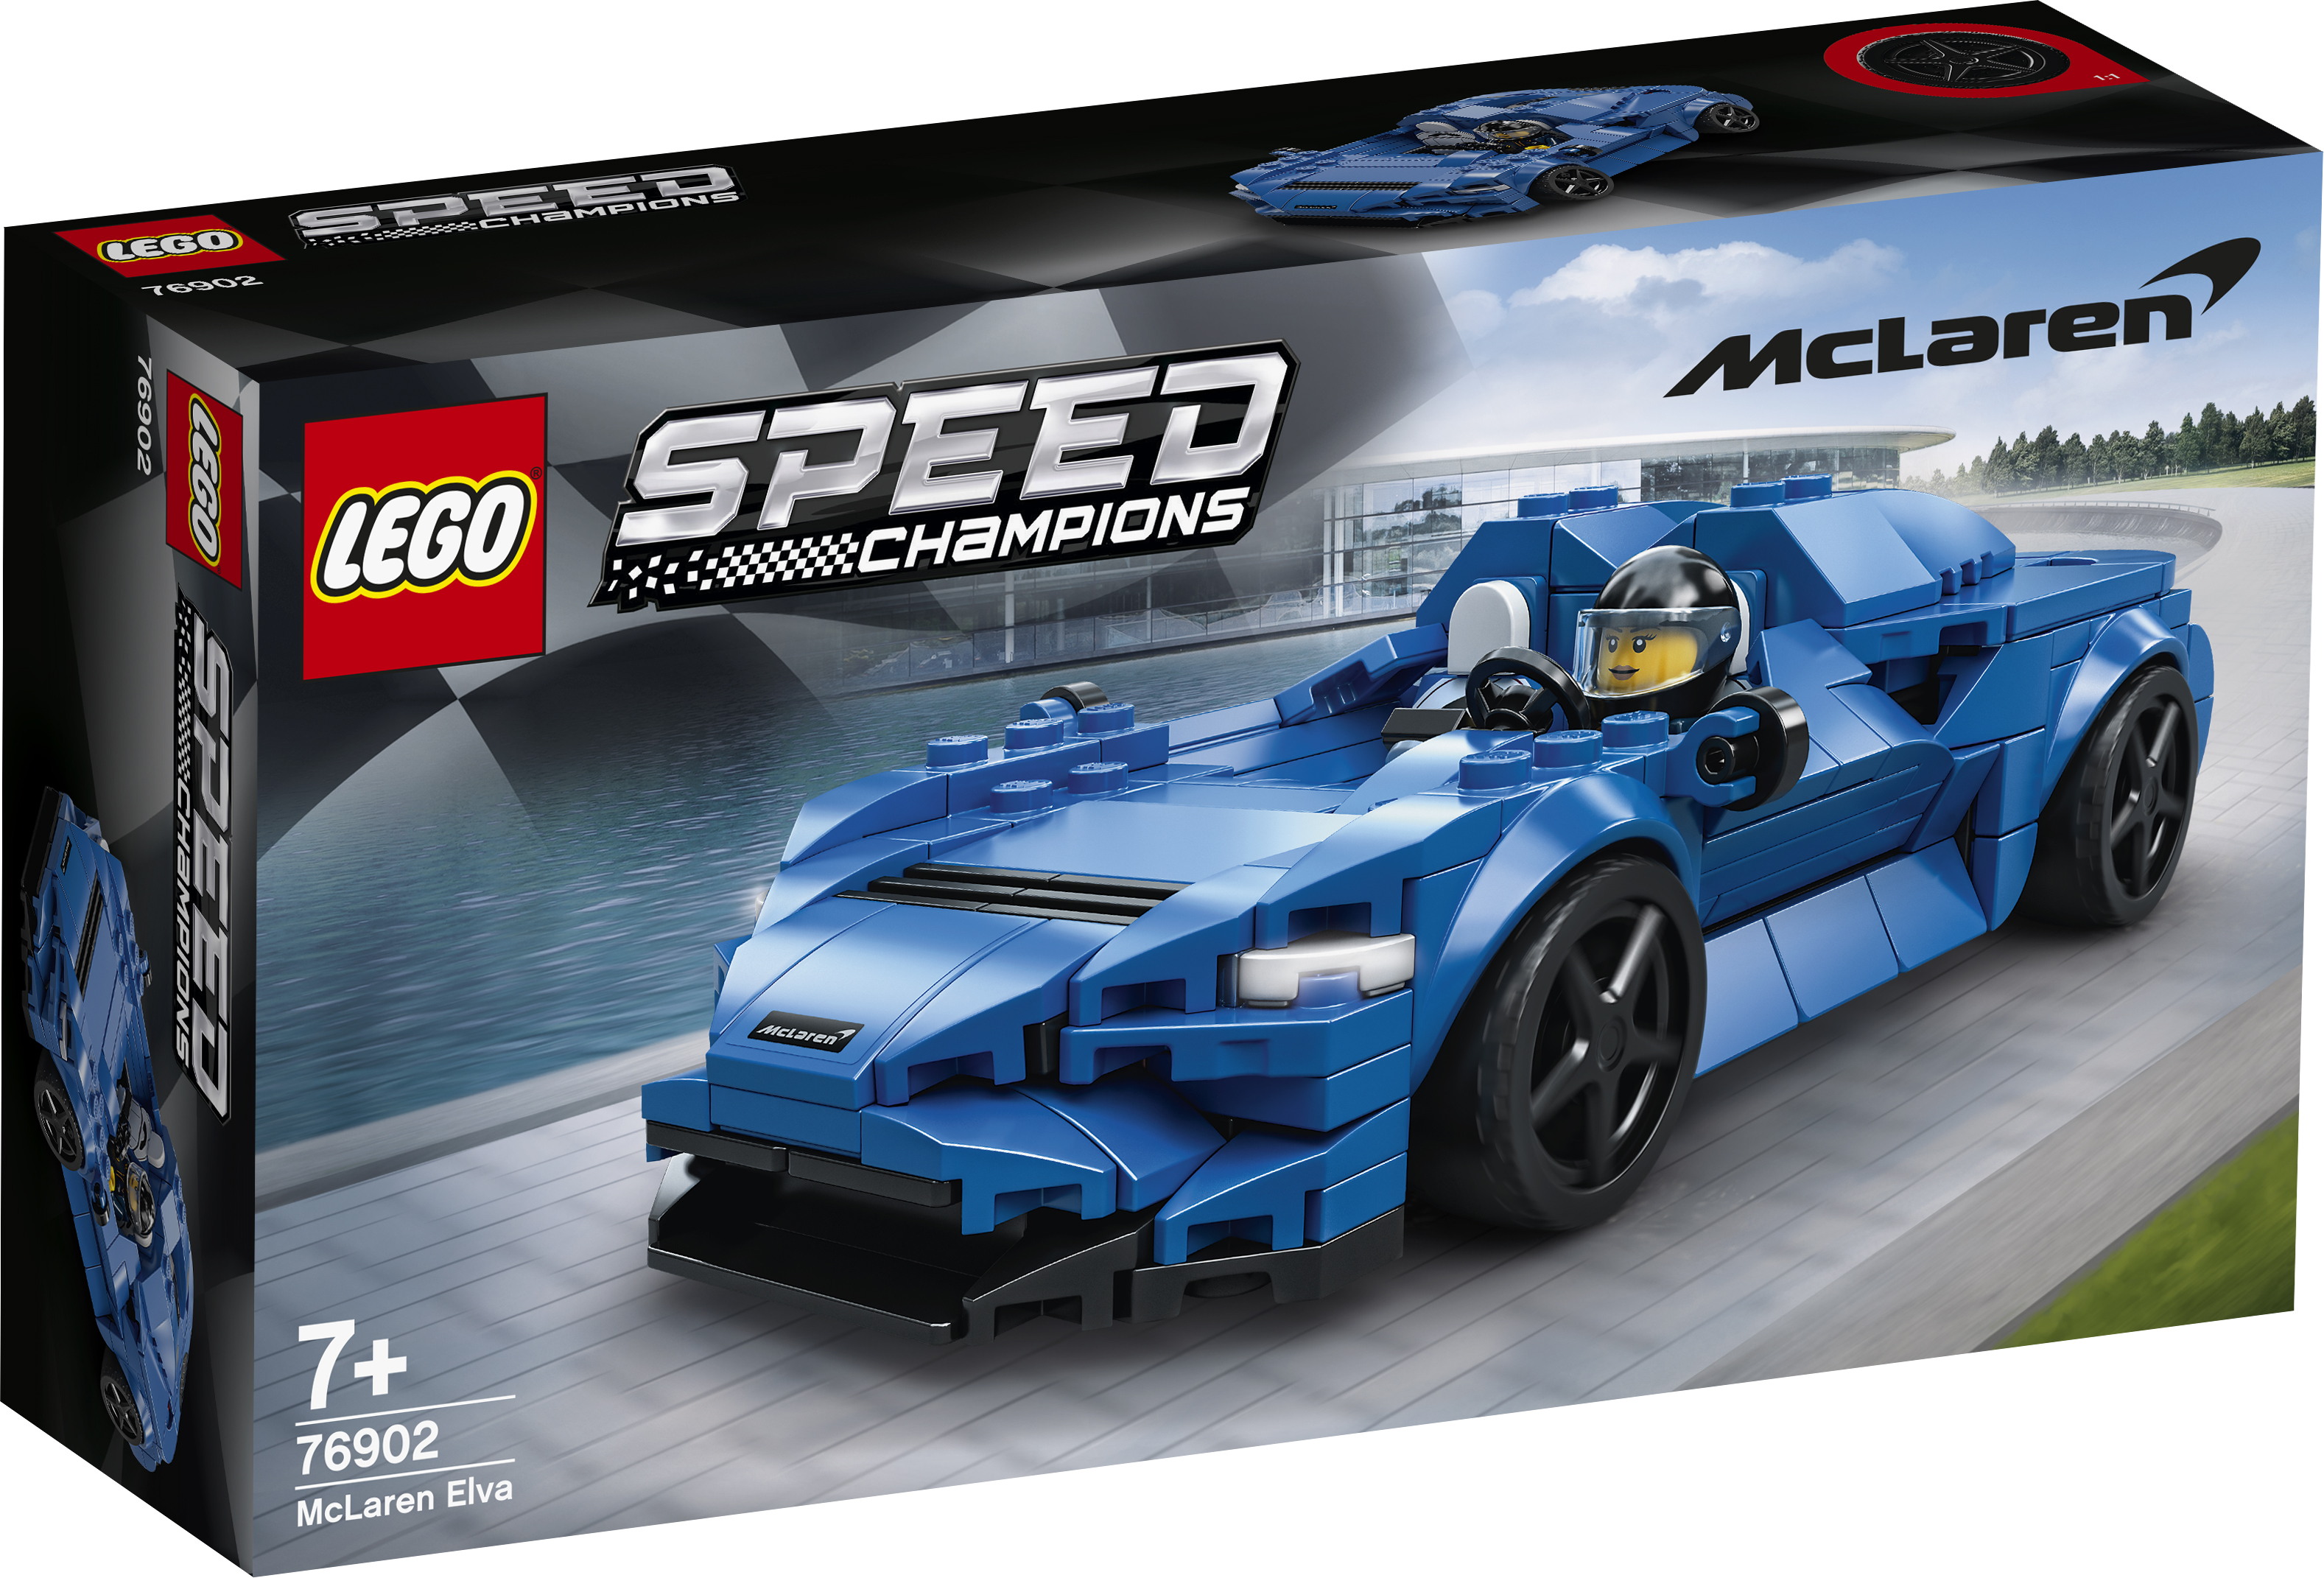  Speed Champions Mclaren Elva - 76902